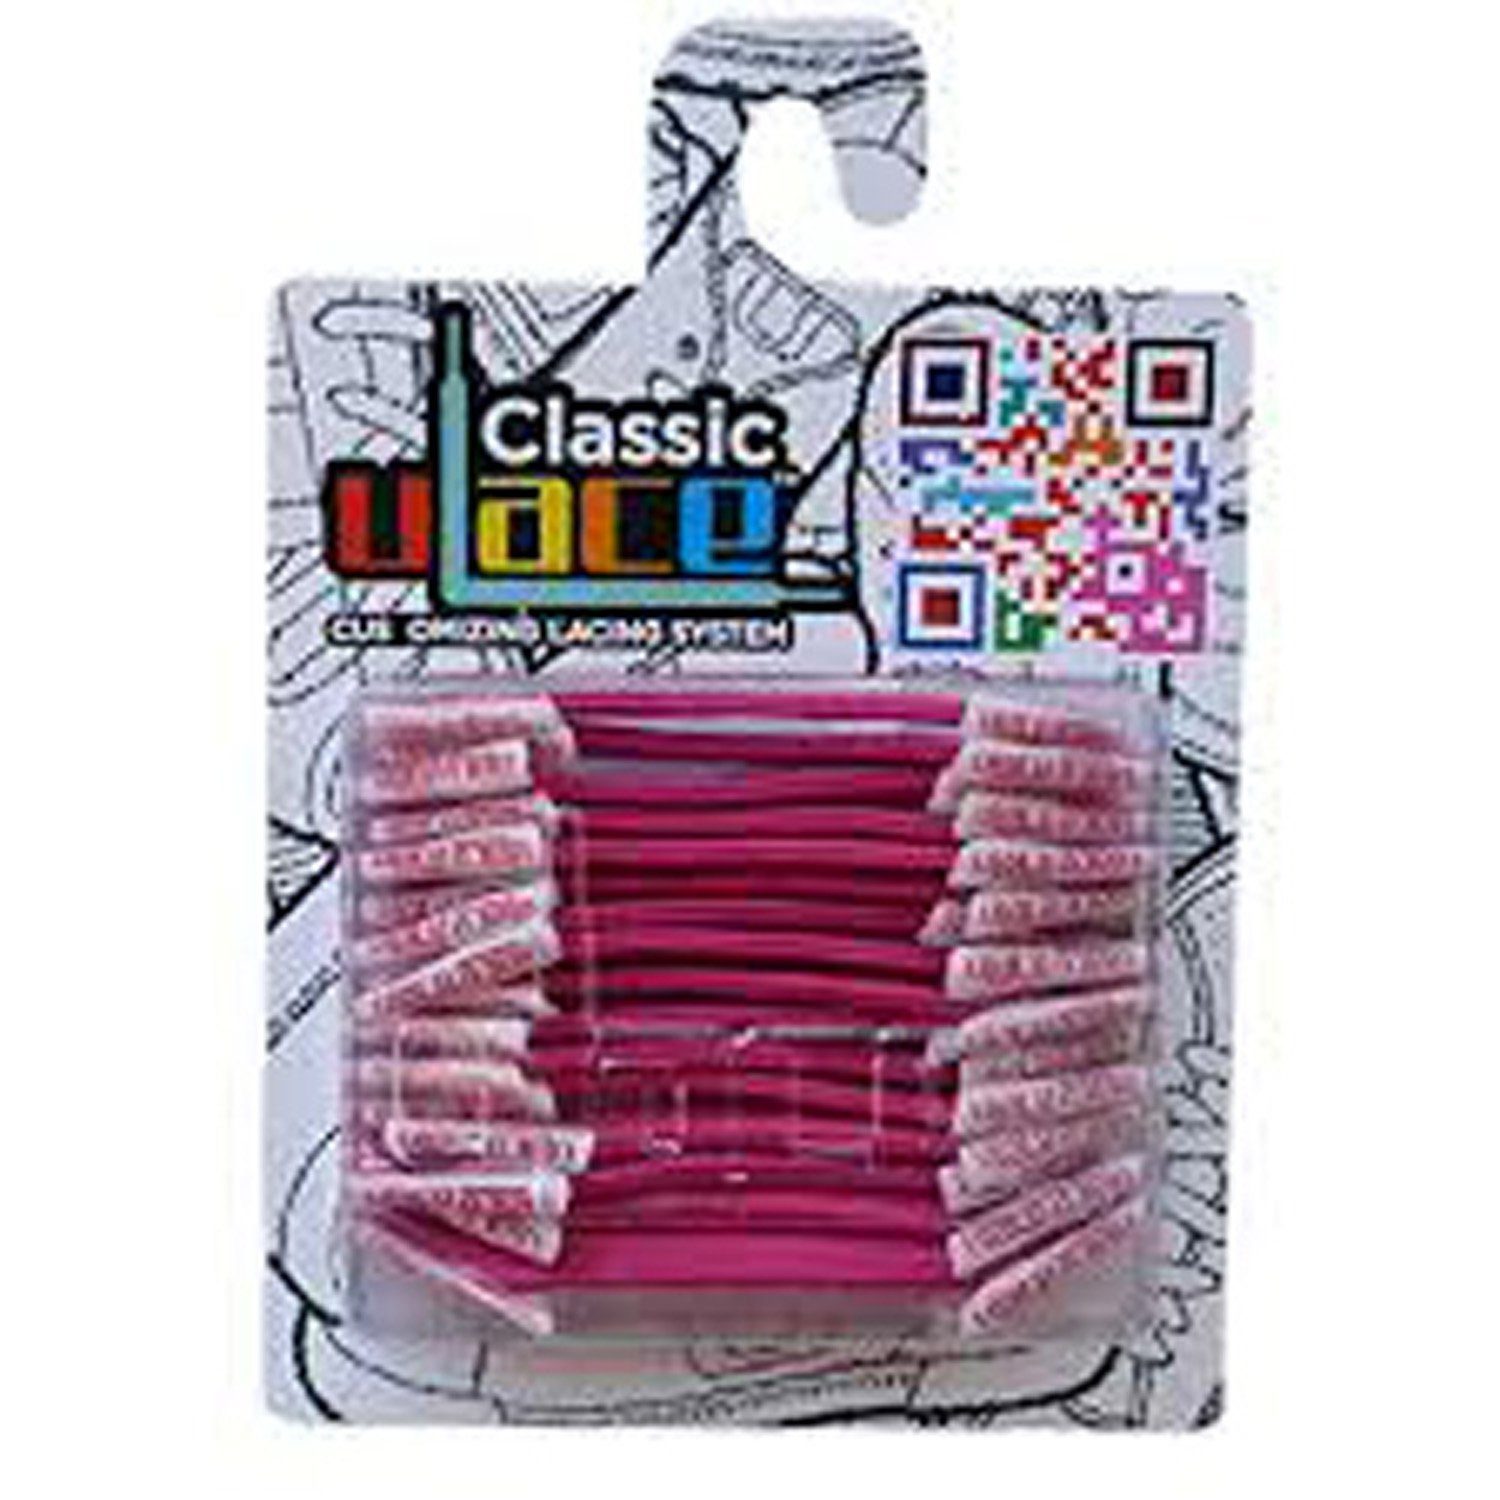 U-Laces Schnürsenkel Classic 18 Stück - elastische Schnürsenkel mit Wiederhaken Neon Pink | Schnürsenkel